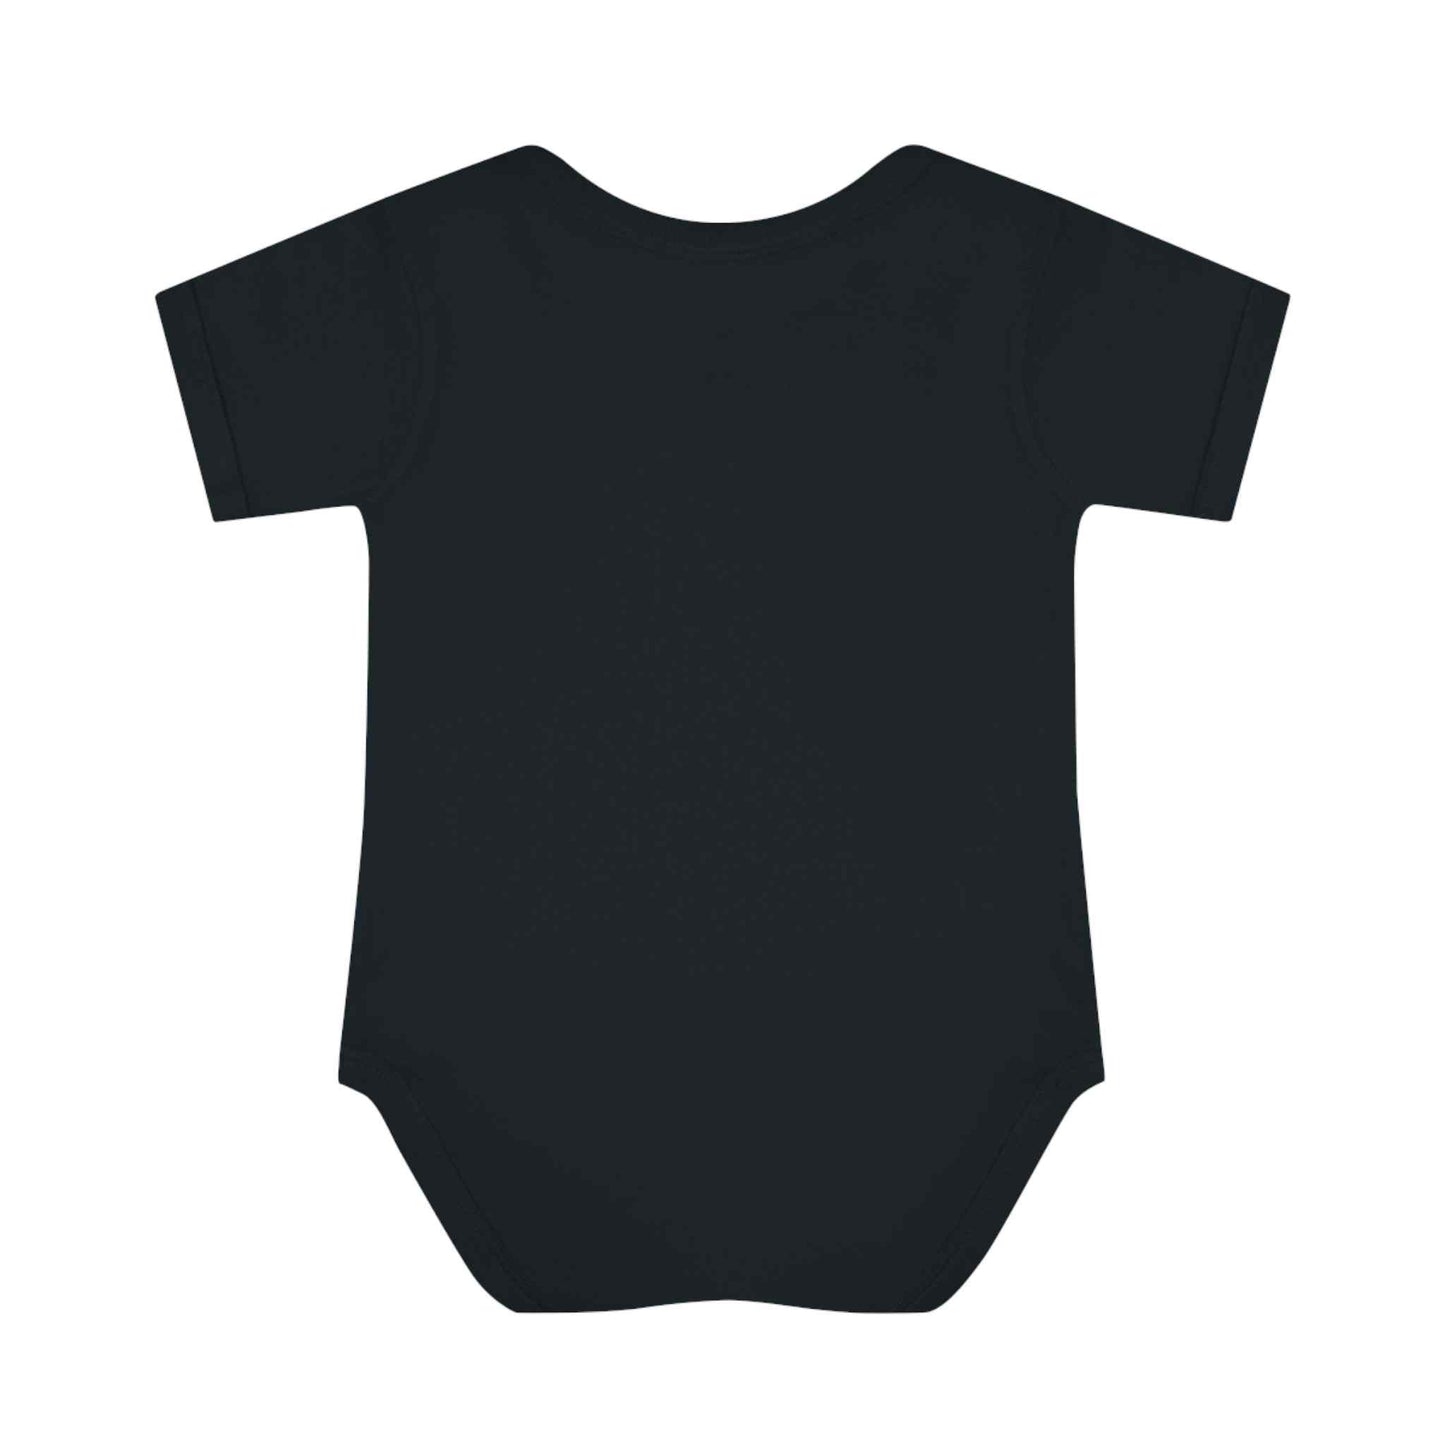 Joyful Noise Infant Baby Bodysuit